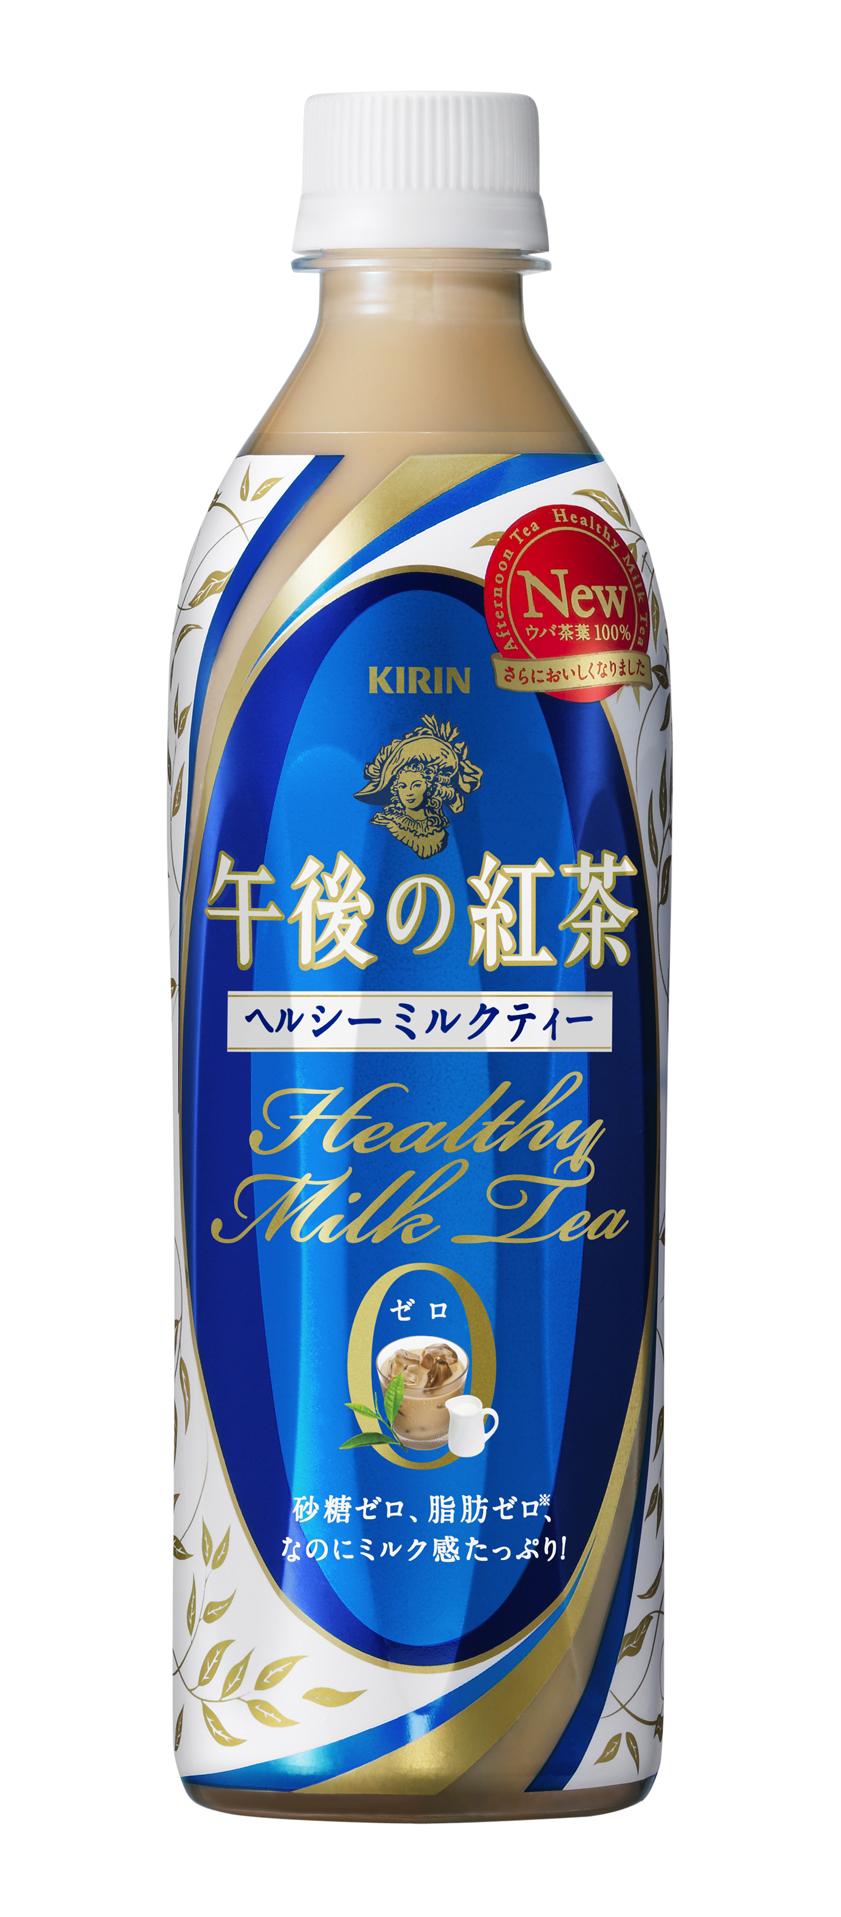 さらに本格的なミルクティーに キリン 午後の紅茶 ヘルシーミルクティー ２月１日 火 リニューアル新発売 11年 ニュースリリース キリン